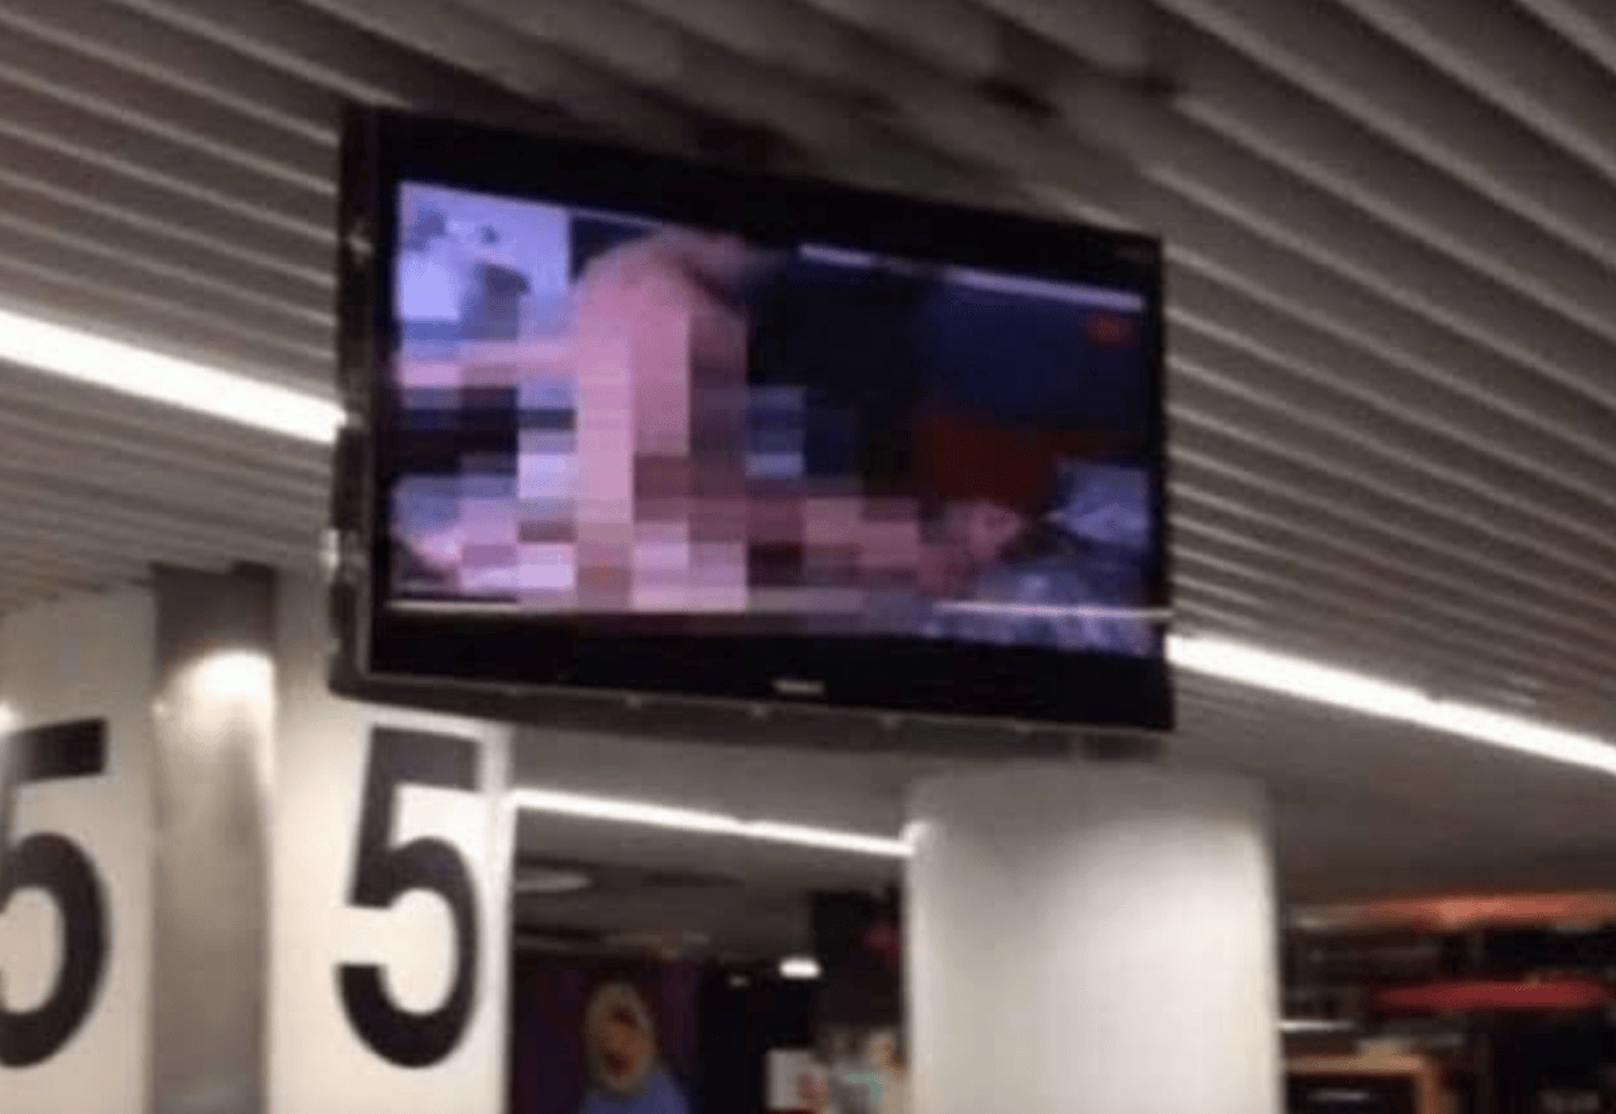 Flughafen spielt Hardcore-Pornos – Passagiere entsetzt